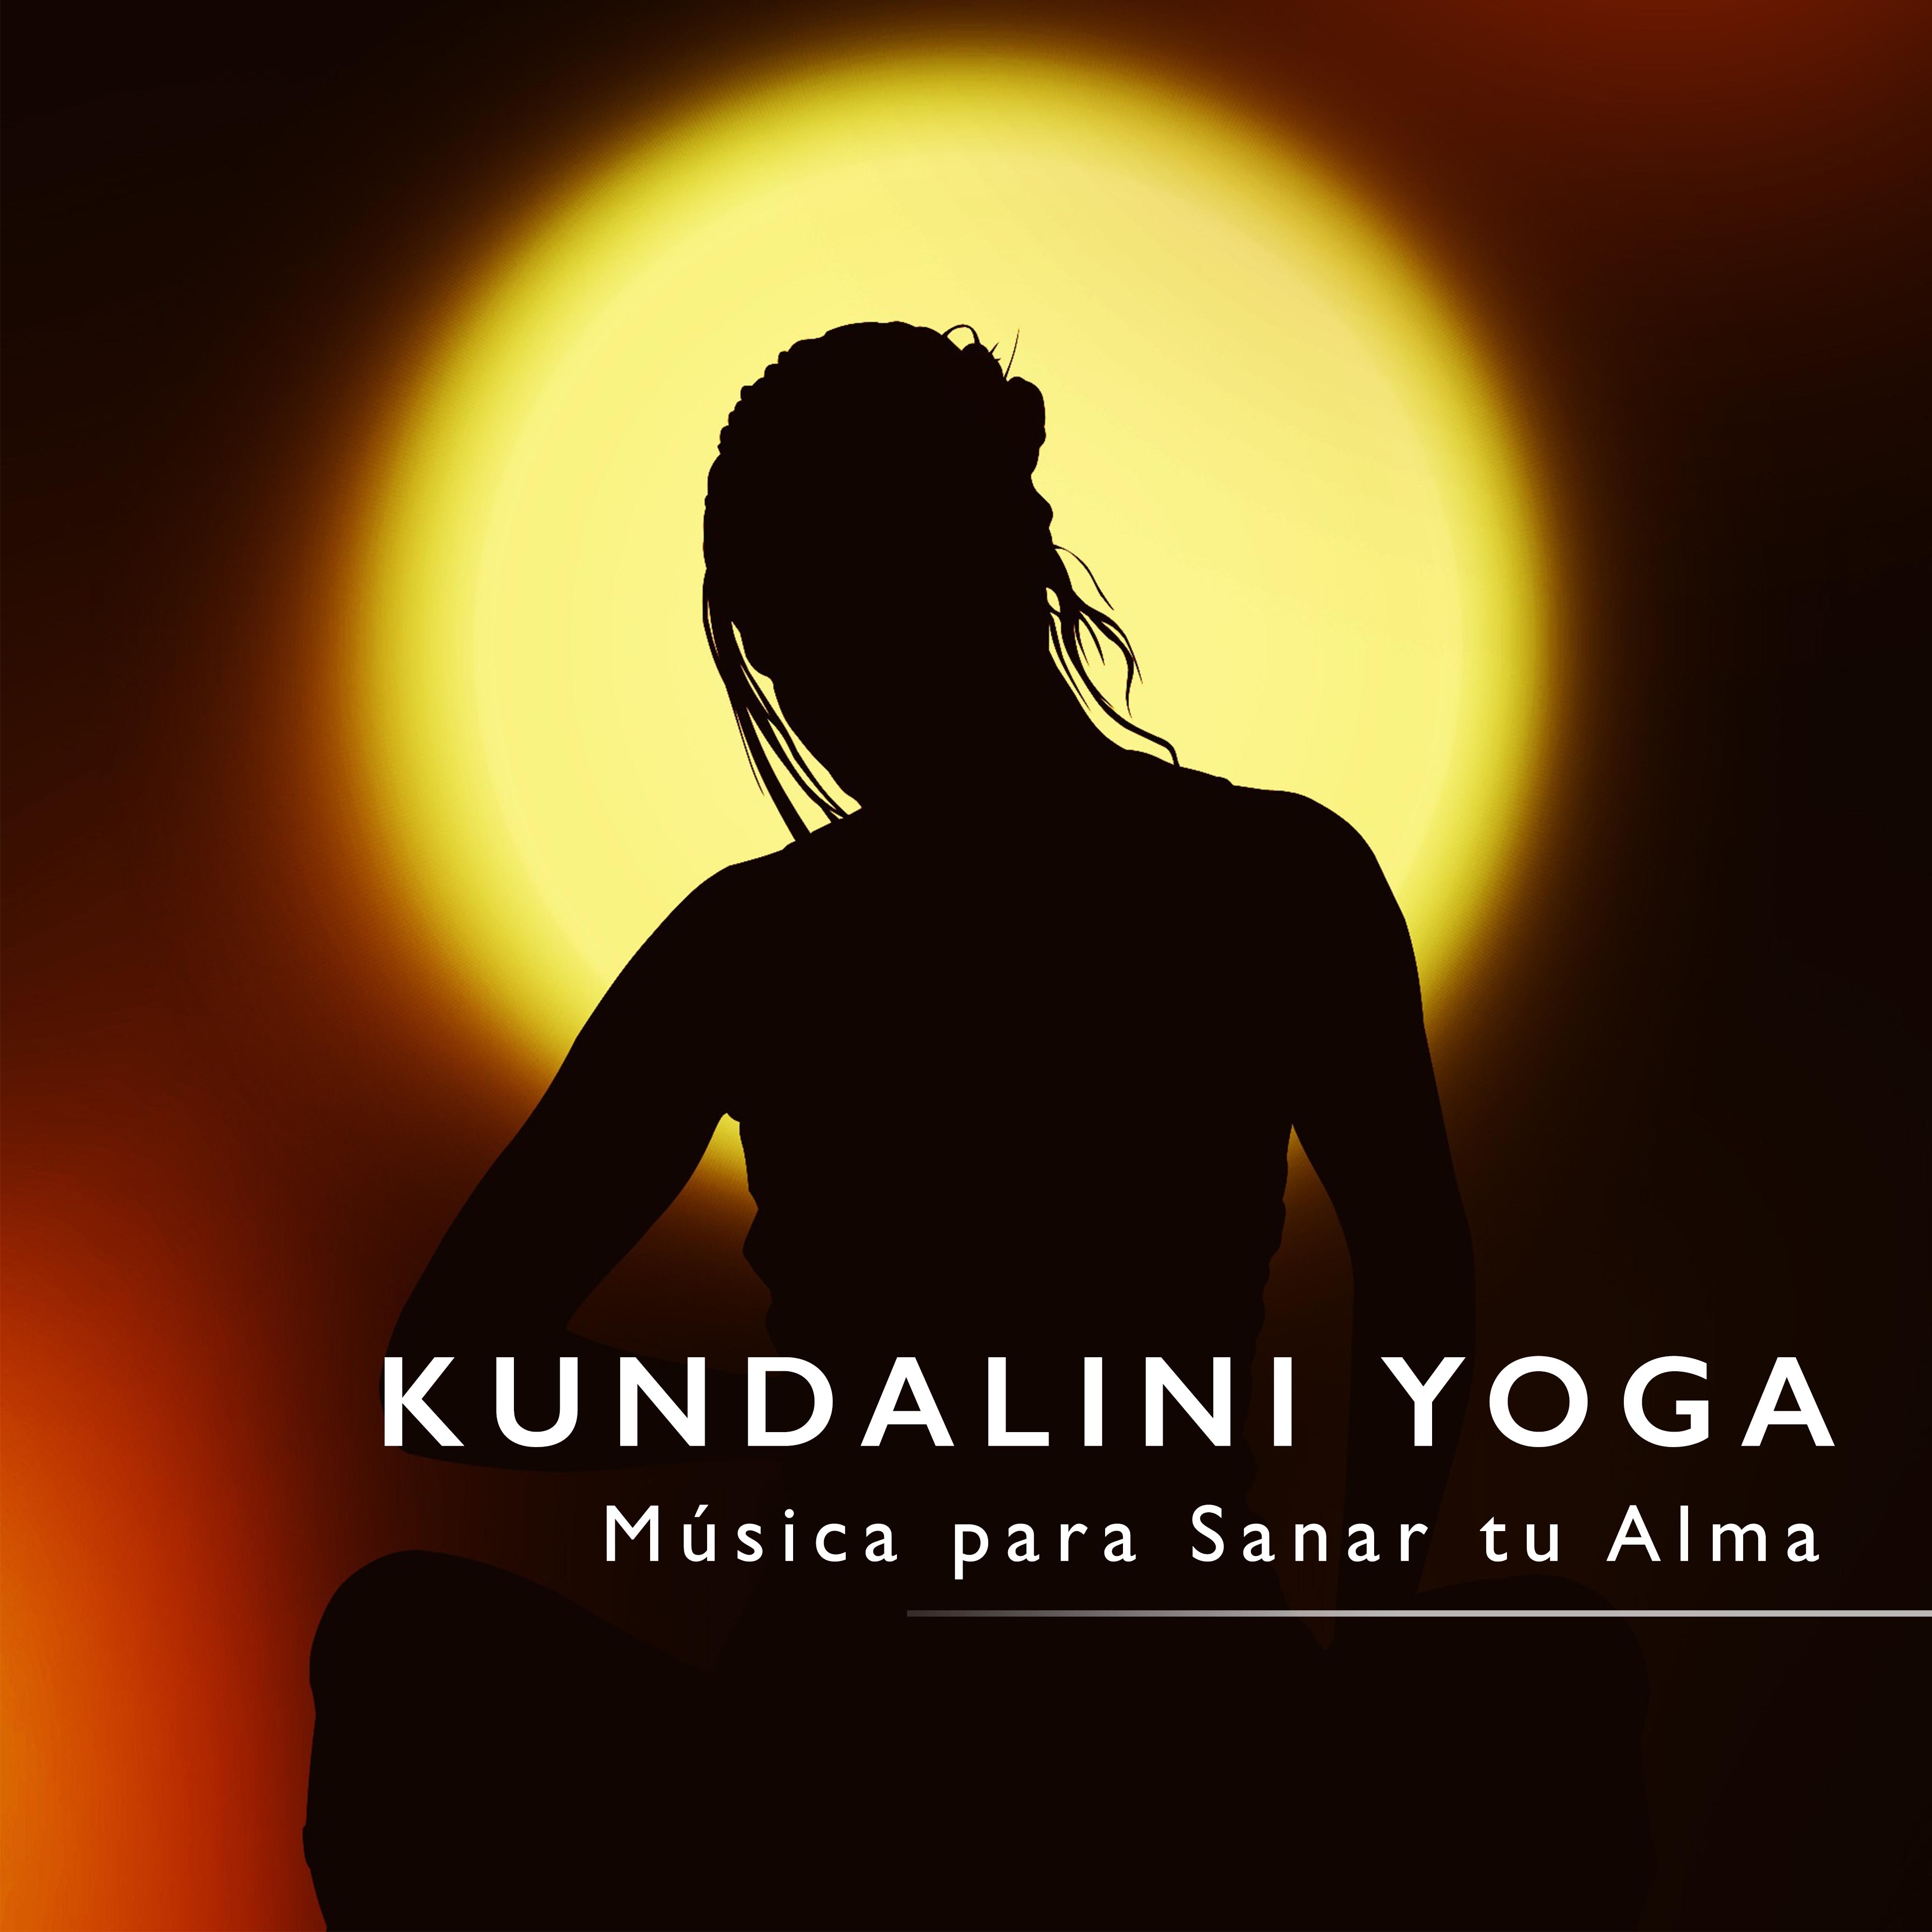 Kundalini Yoga - Música para Sanar tu Alma